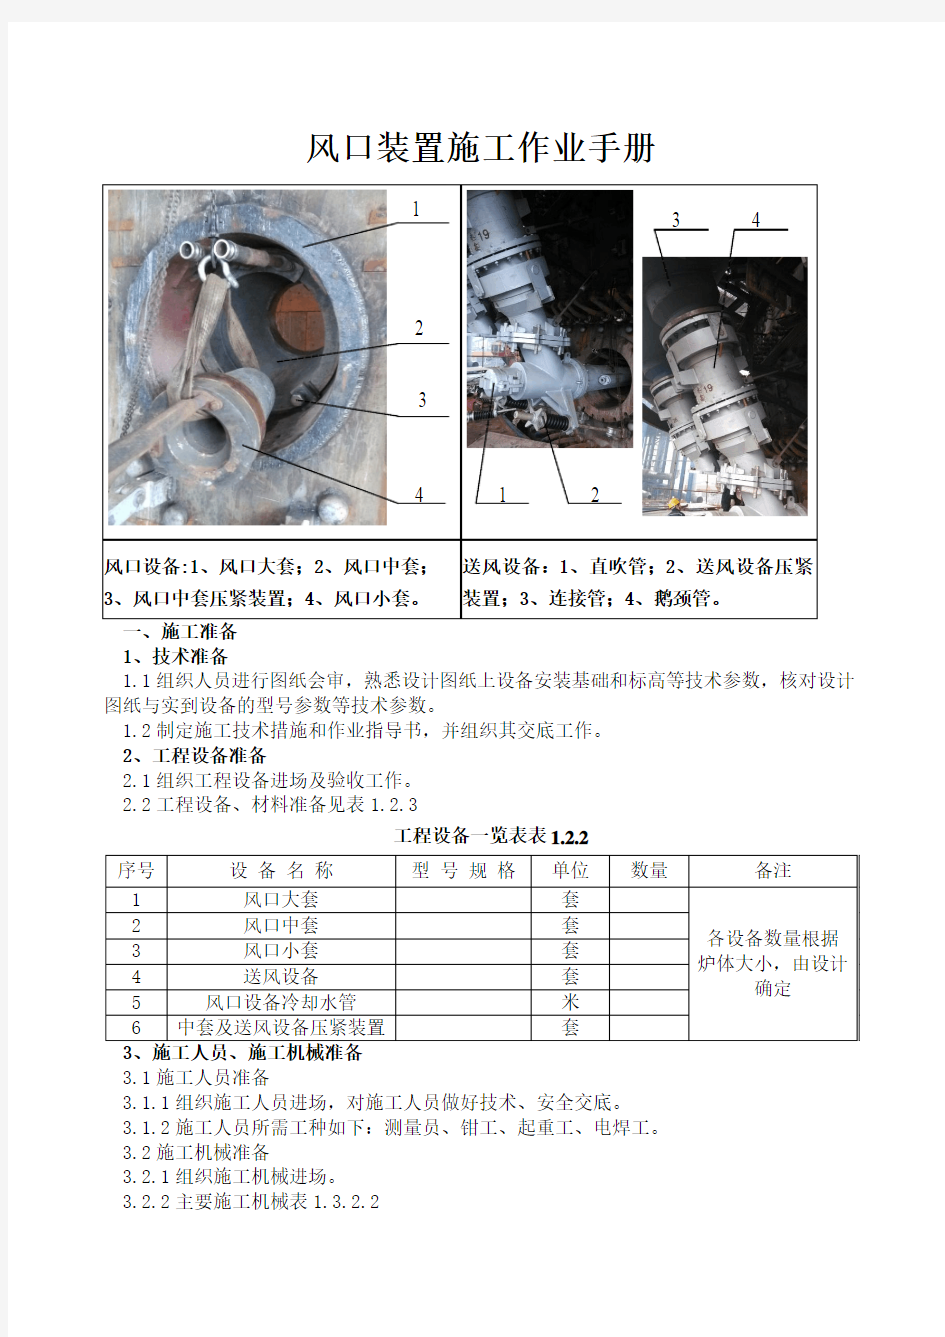 高炉风口装置施工作业手册